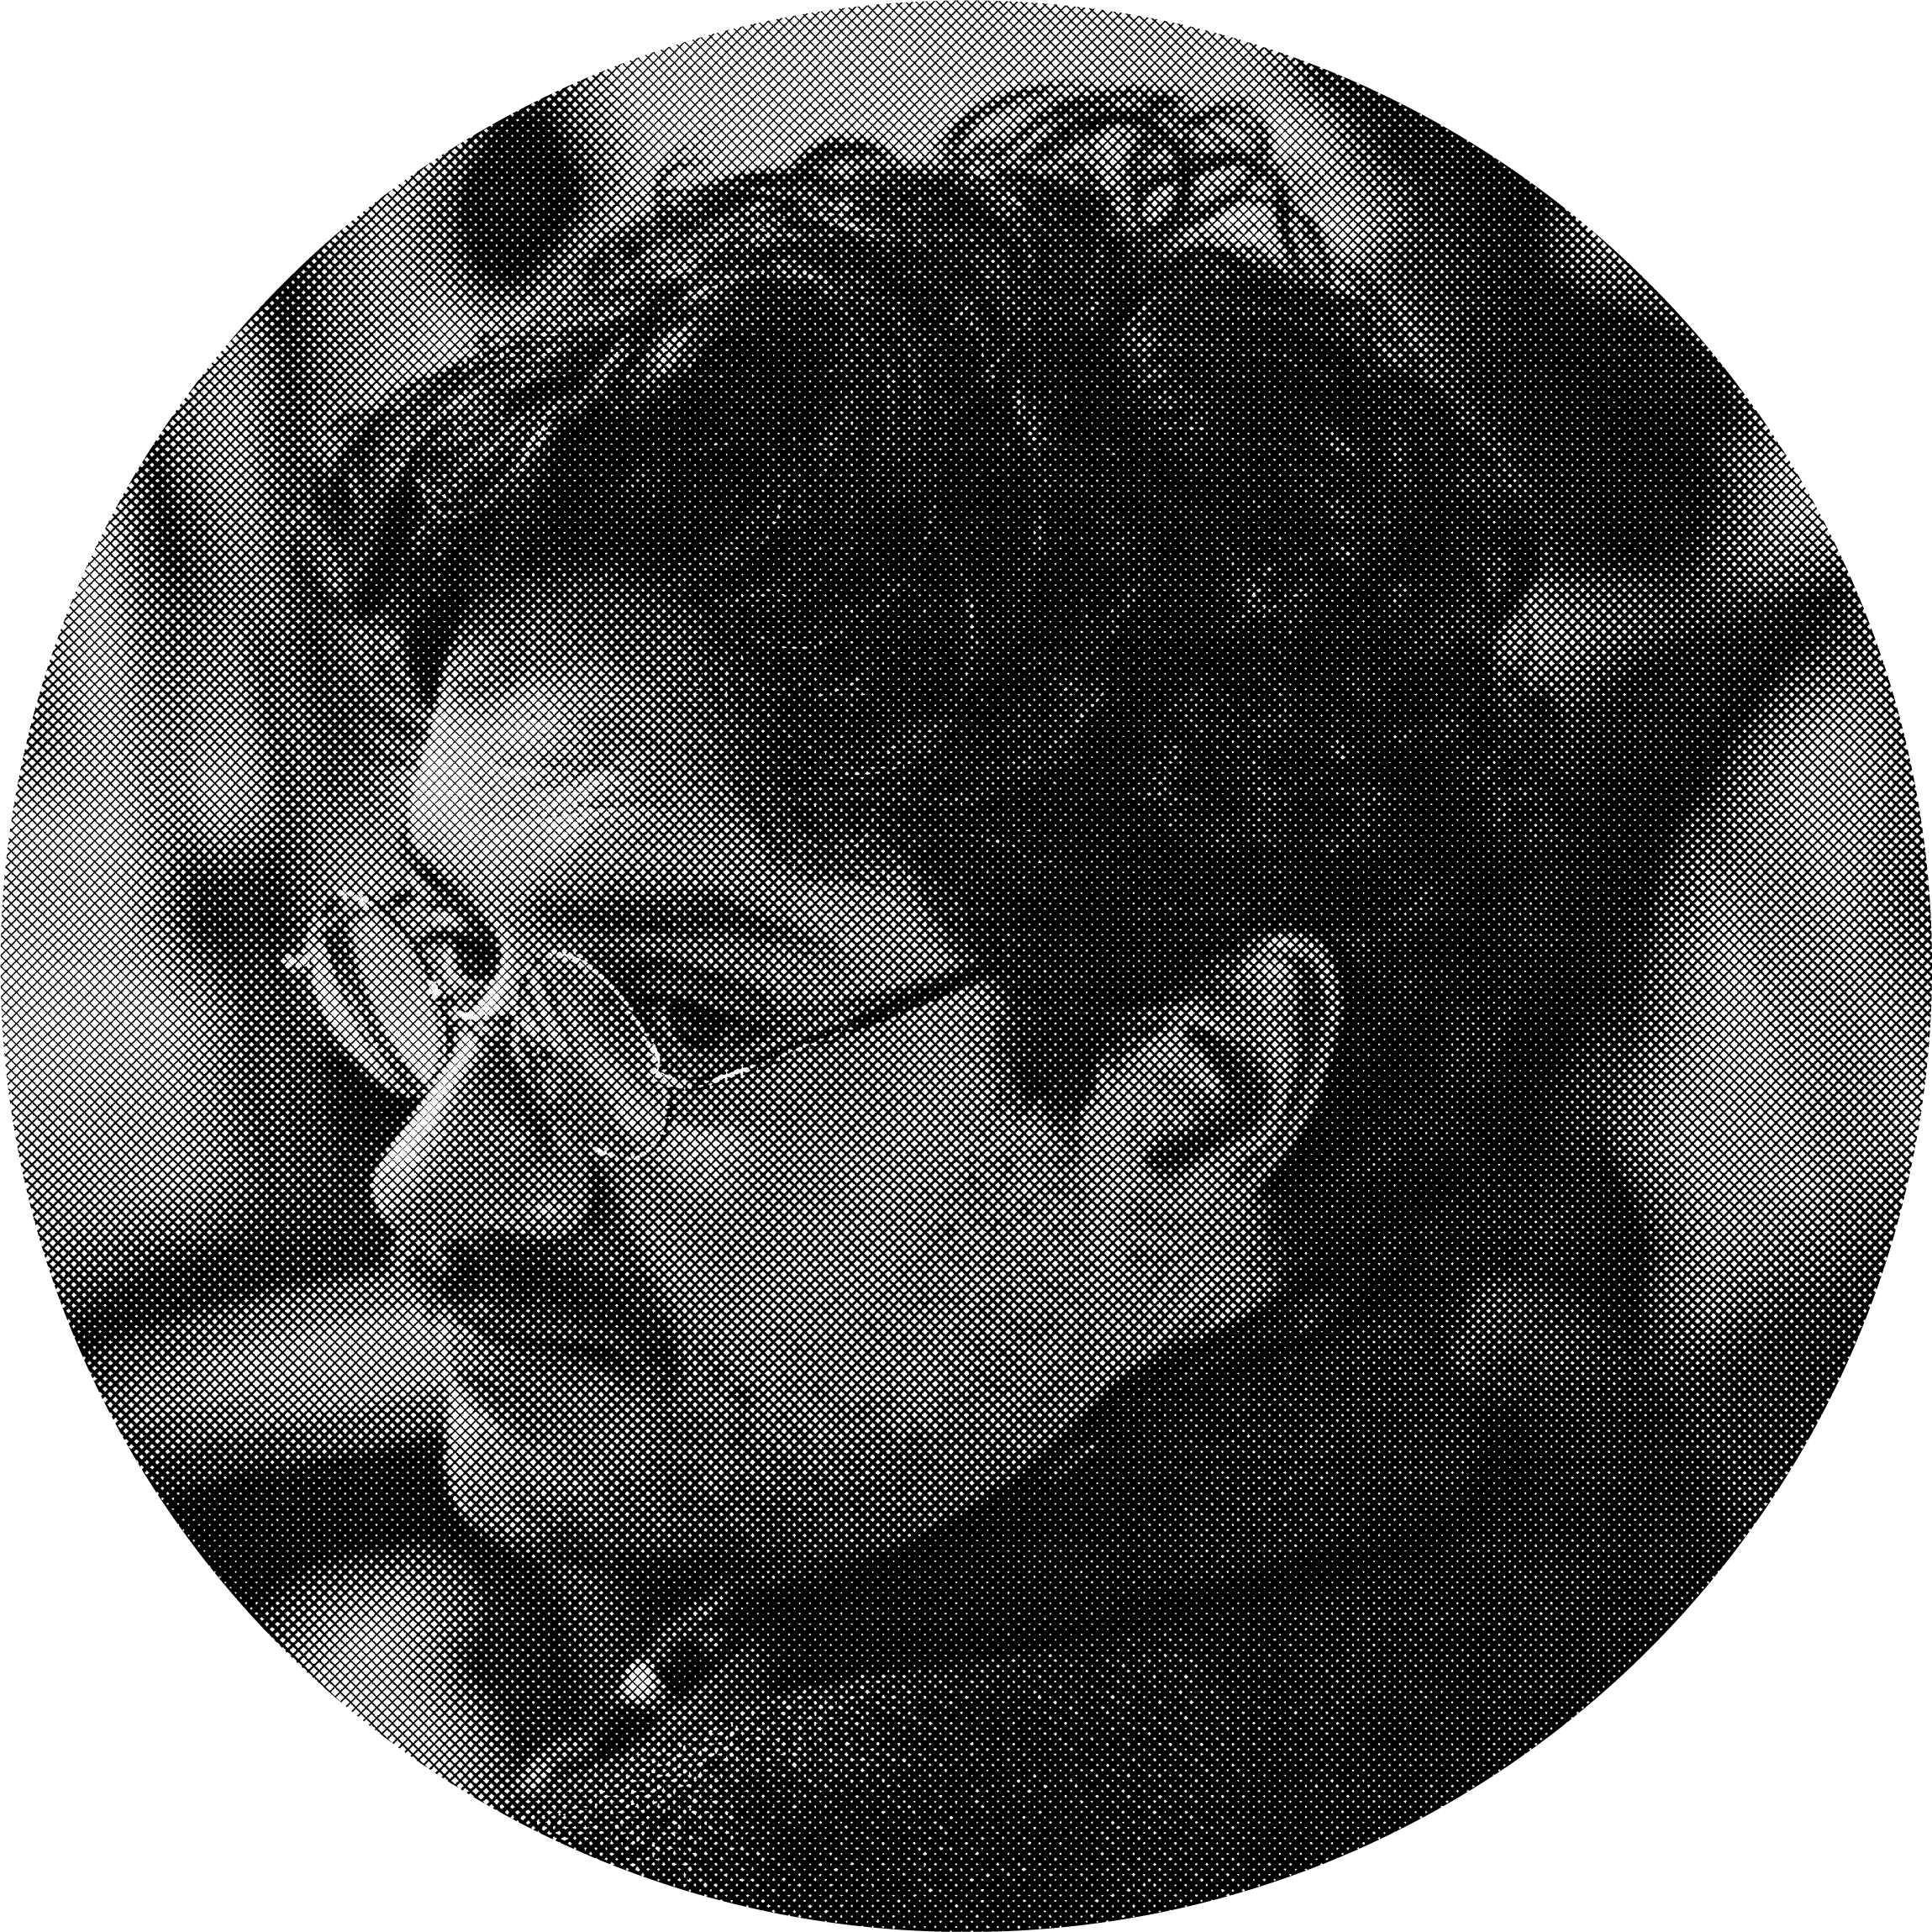 Juan Pablo Marín, CEO at Datasketch